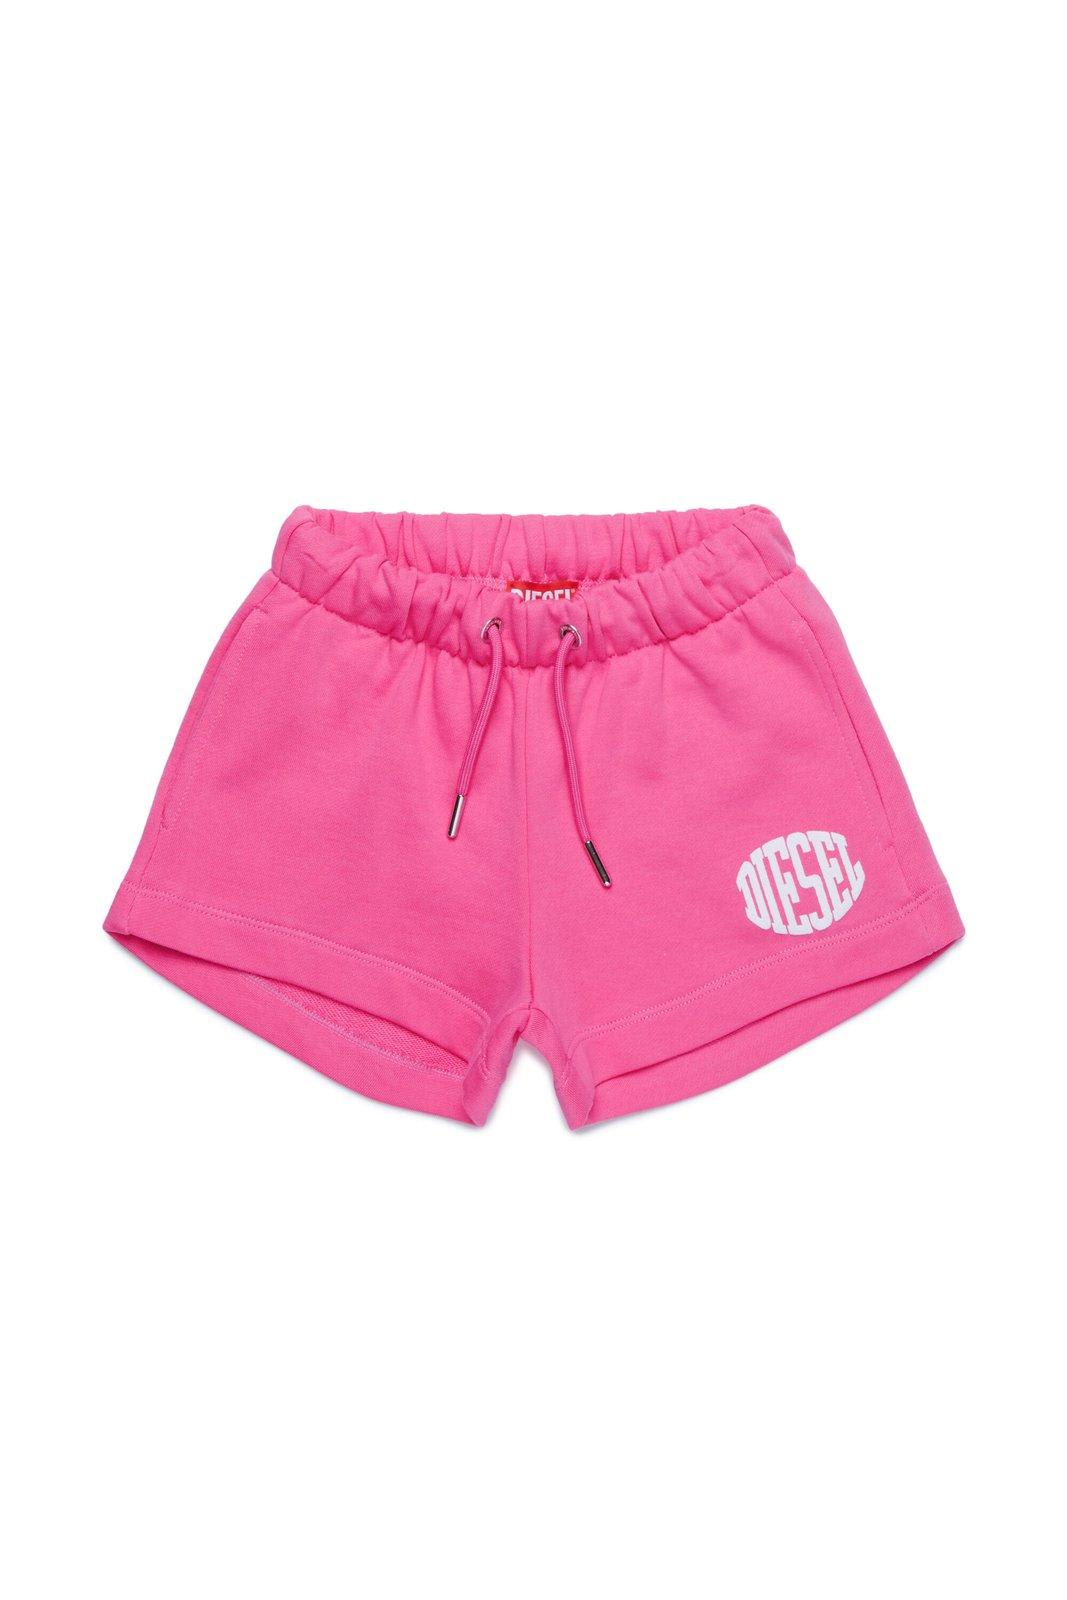 Diesel Kids' Paglife Logo Printed Drawstring Shorts In Pink